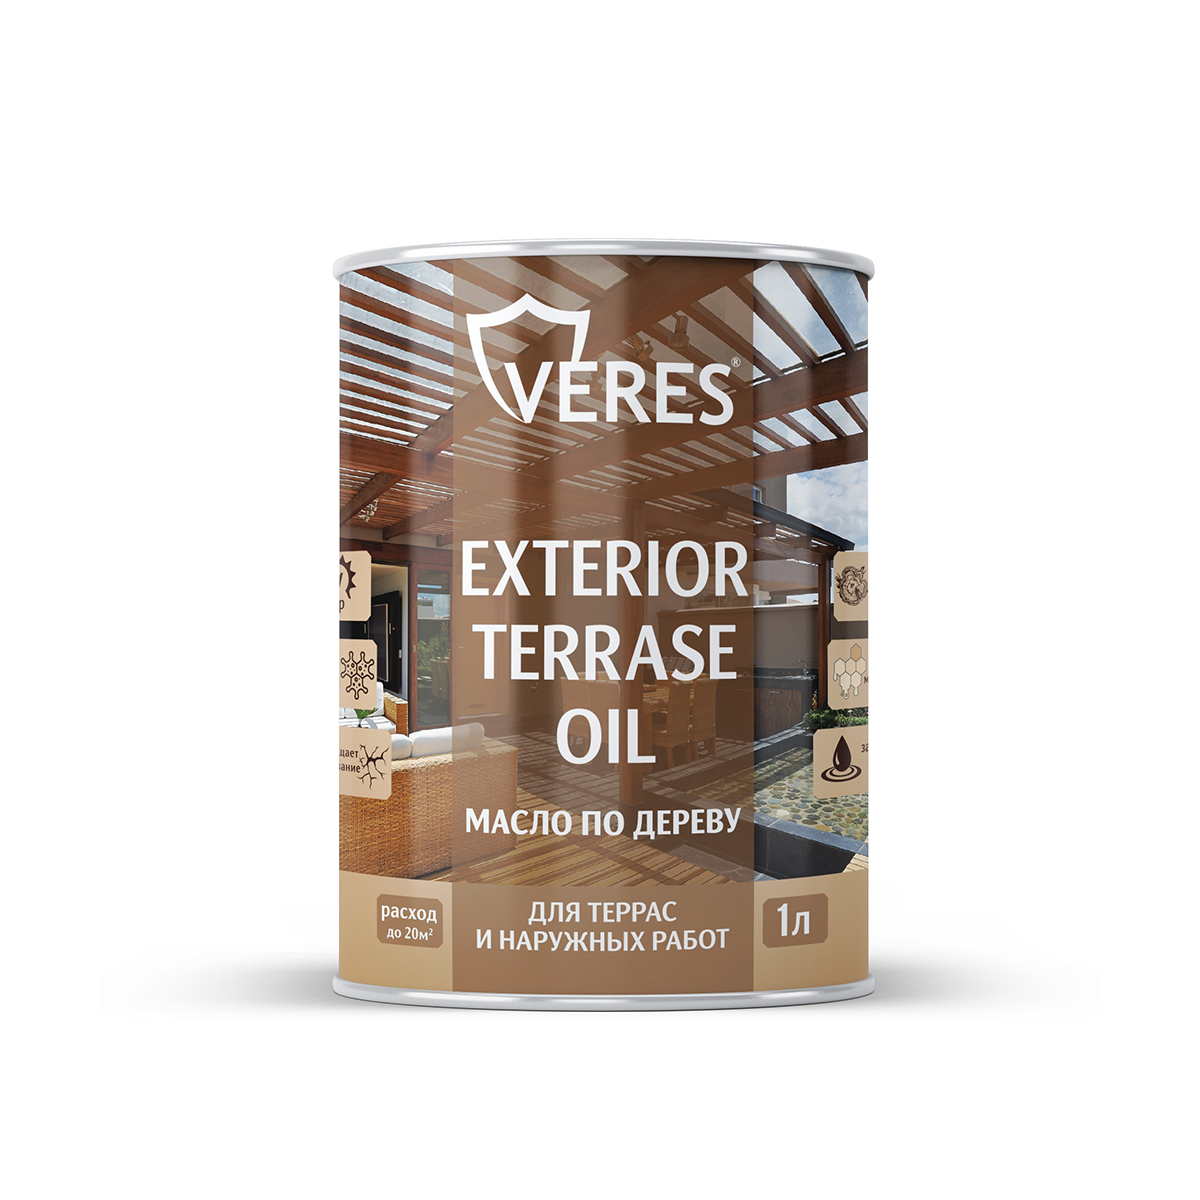 Масло для дерева Veres Exterior Terrase Oil, 1 л, палисандр - купить в Москве, цены на Мегамаркет